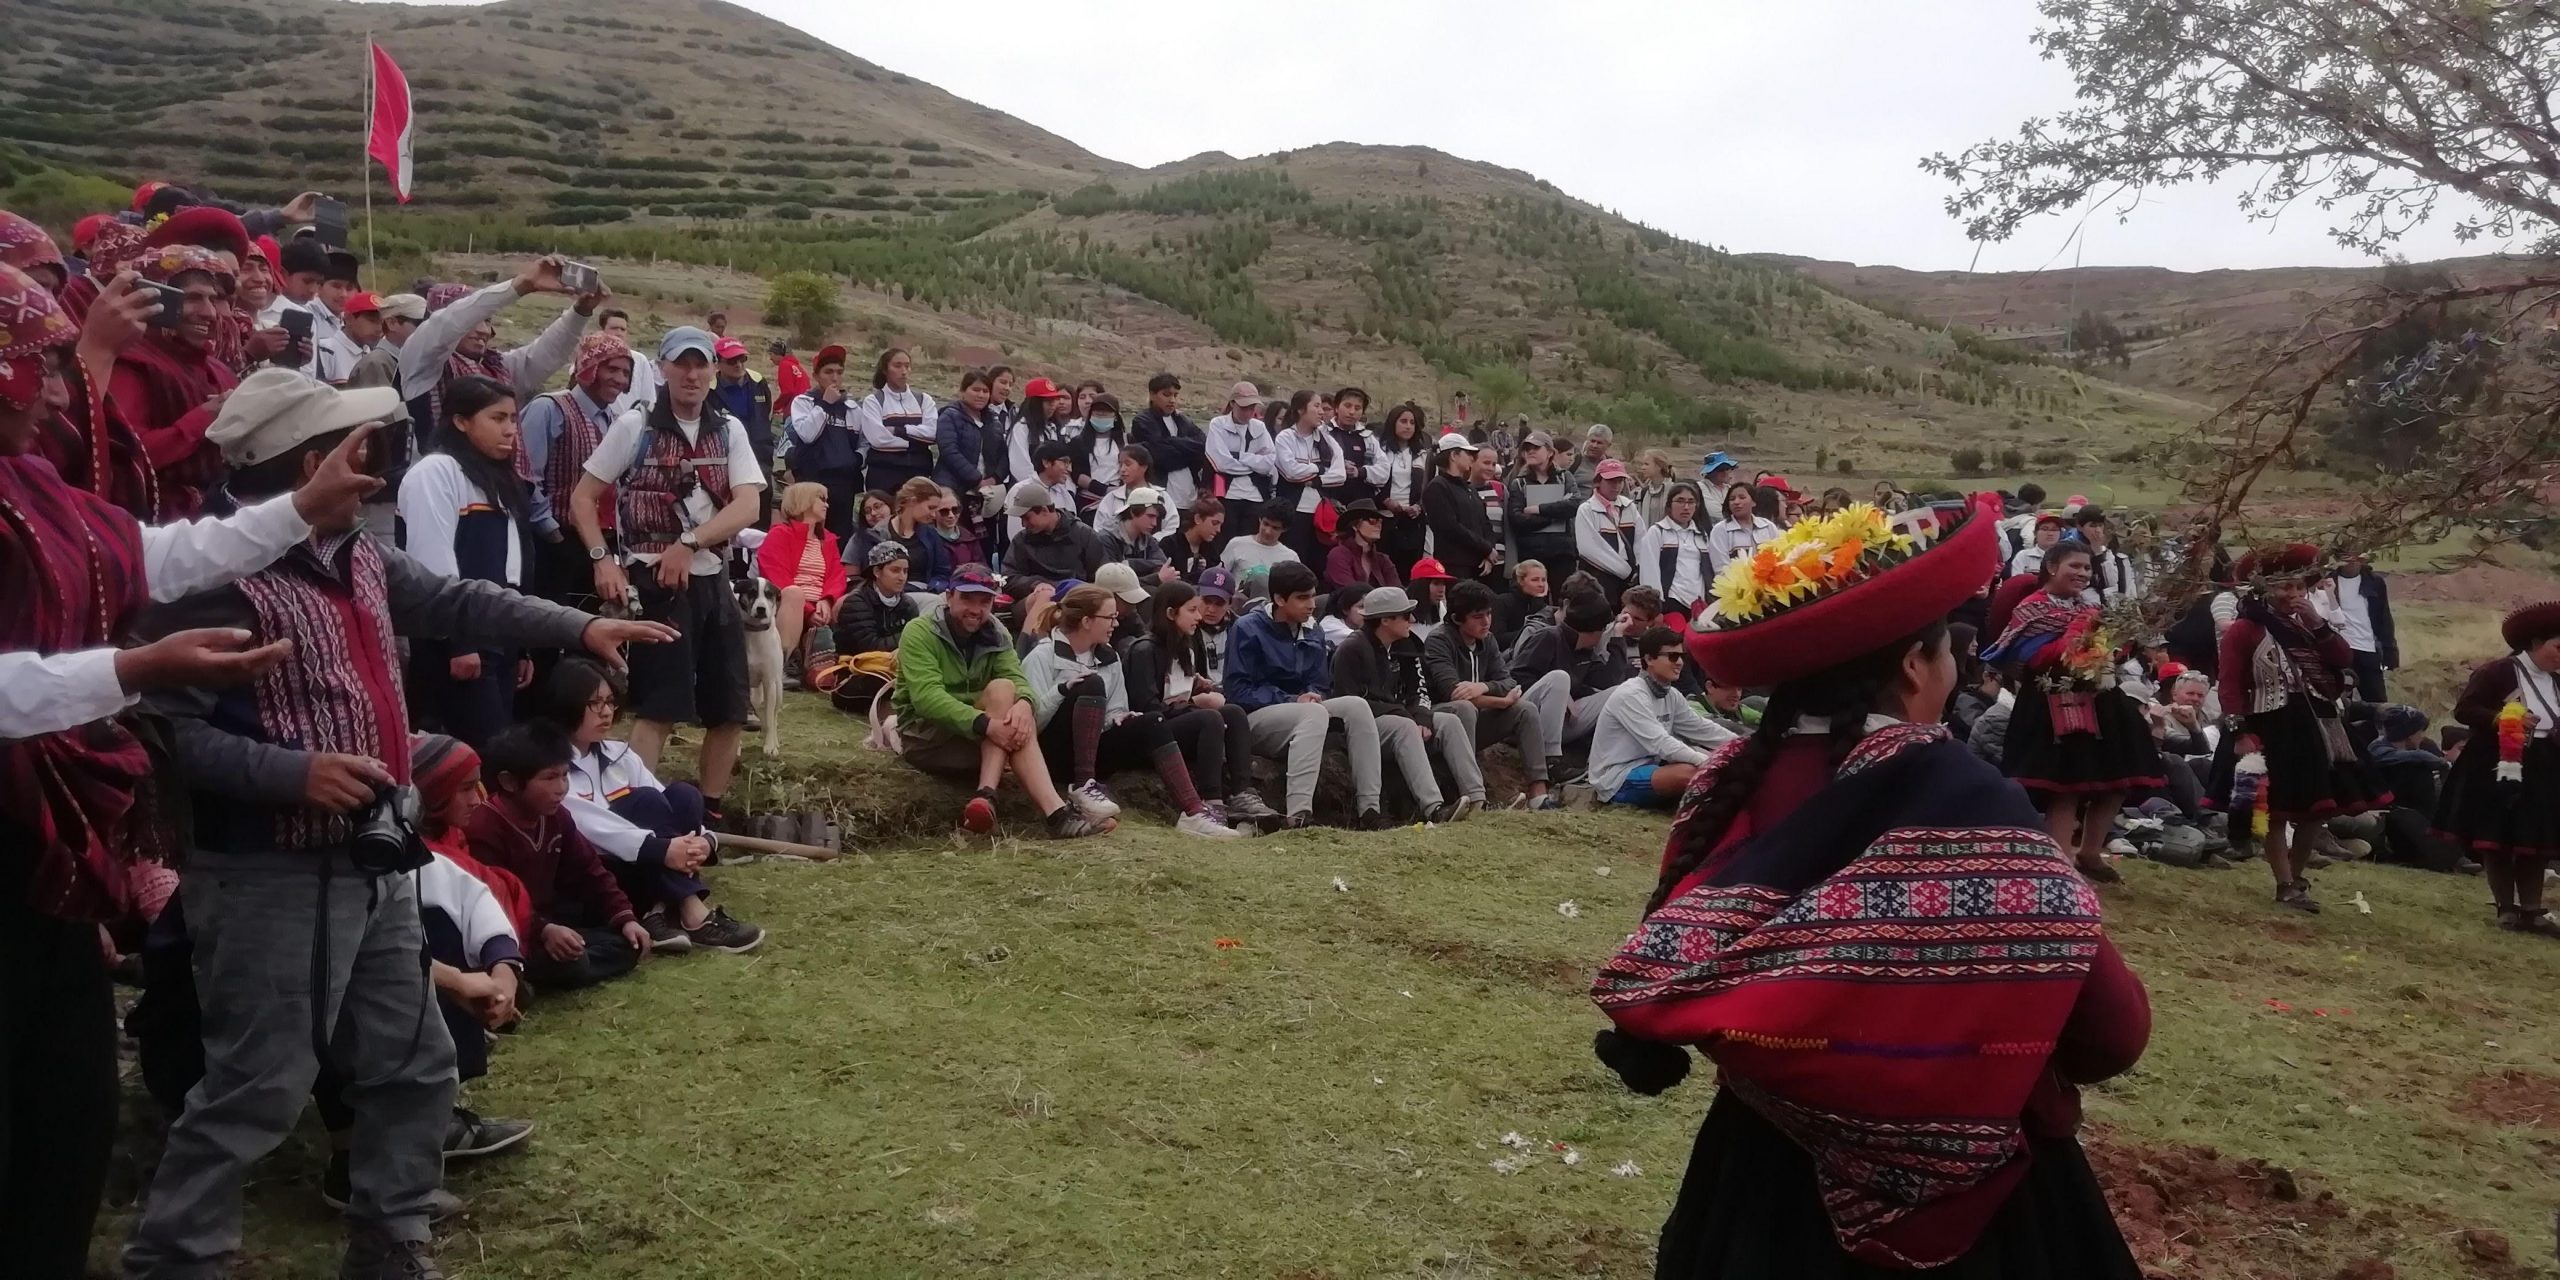 100 alumnos del COAR Cuzco se unieron a los alumnos de S4 para plantar 10,000 árboles en la zona de Piuray